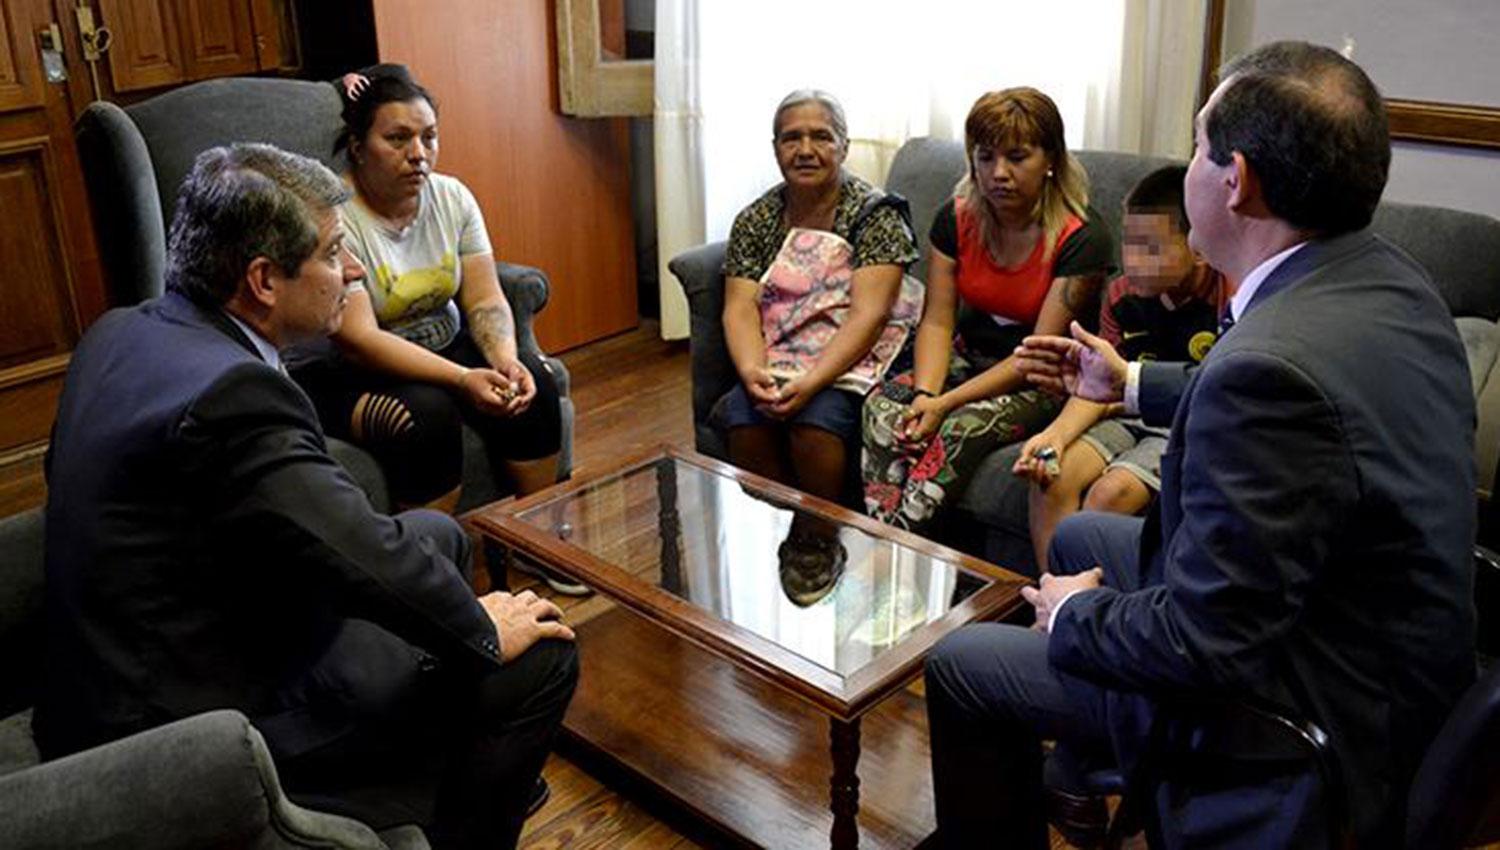 REUNIÓN. El ministro Claudio Maley recibió a la familia del niño en la Casa de Gobierno.